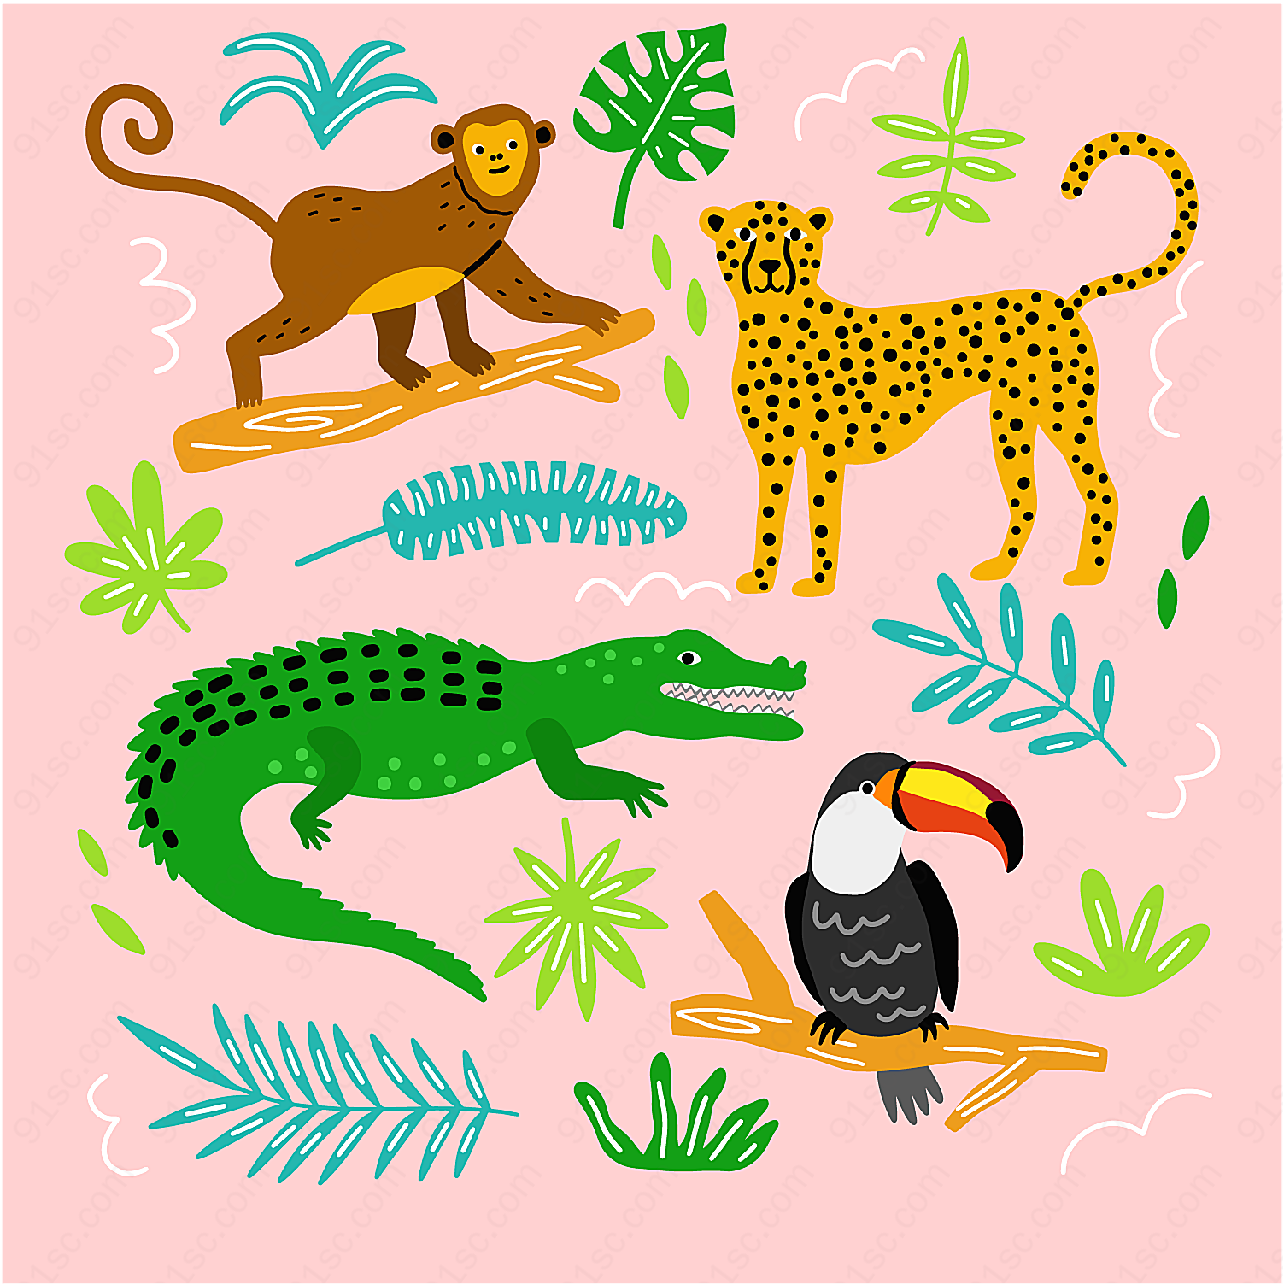 彩绘动物和树叶矢量野生动物